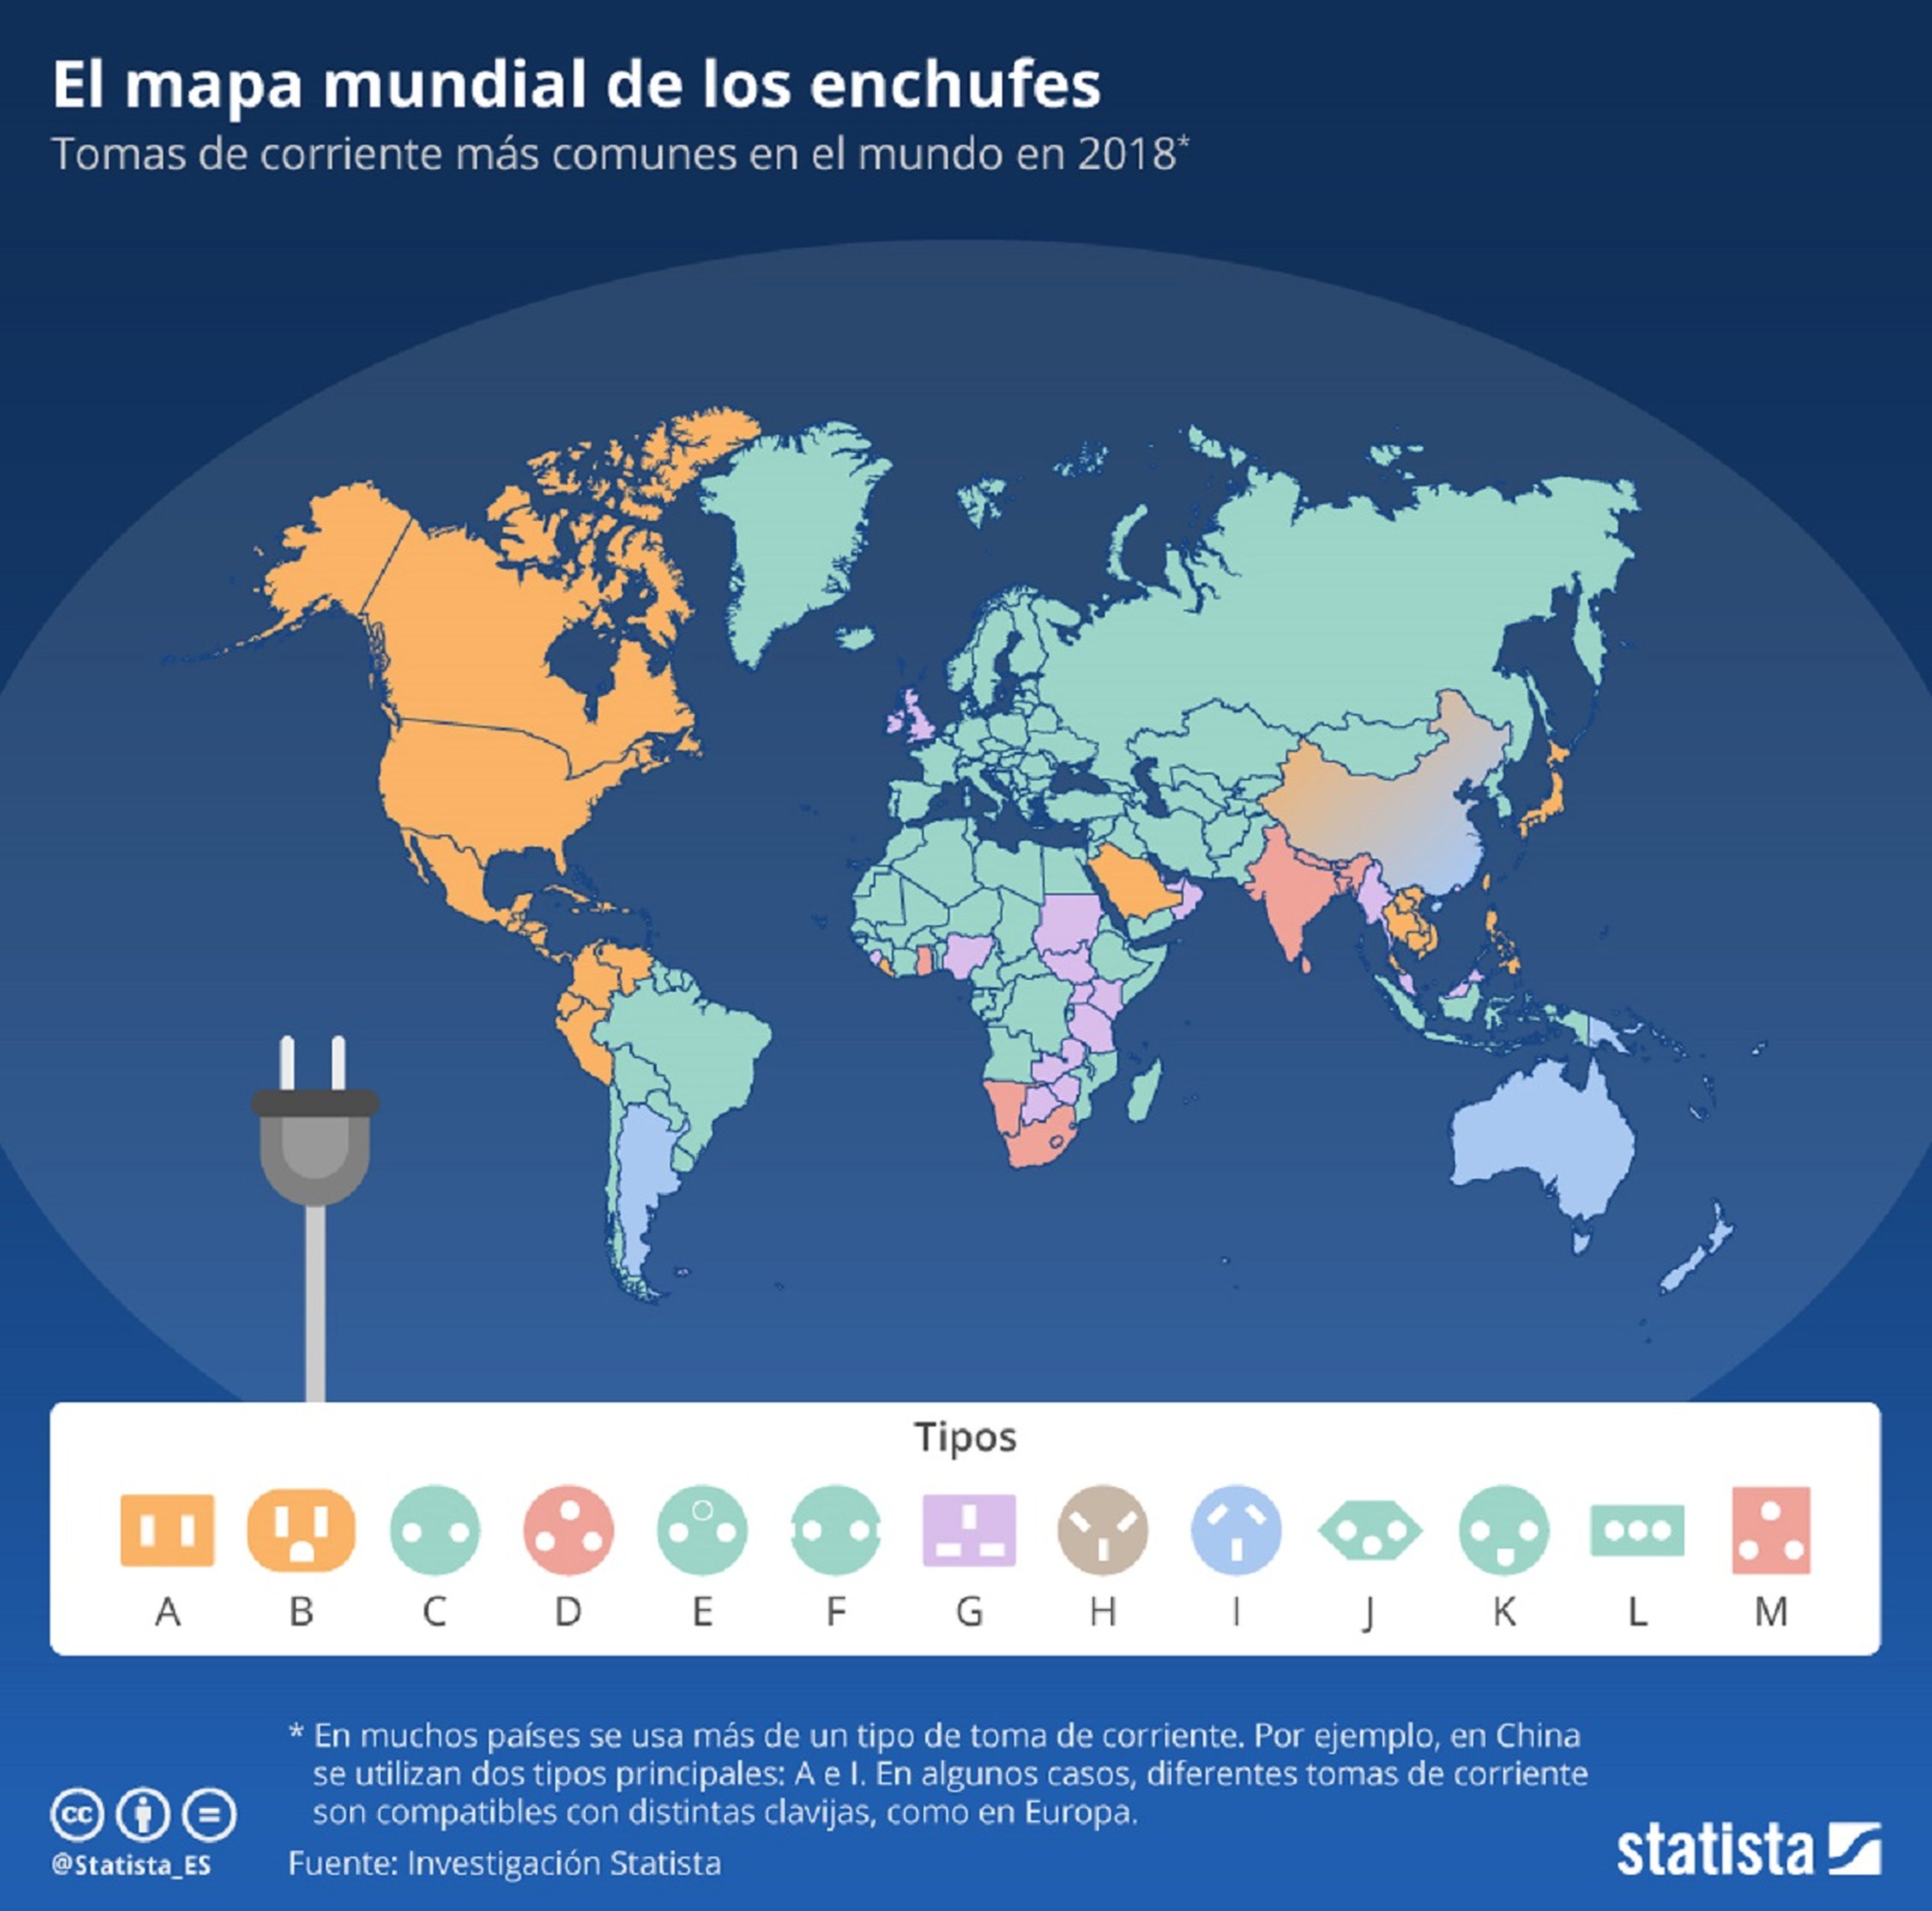 Así es el mapa mundial de los enchufes